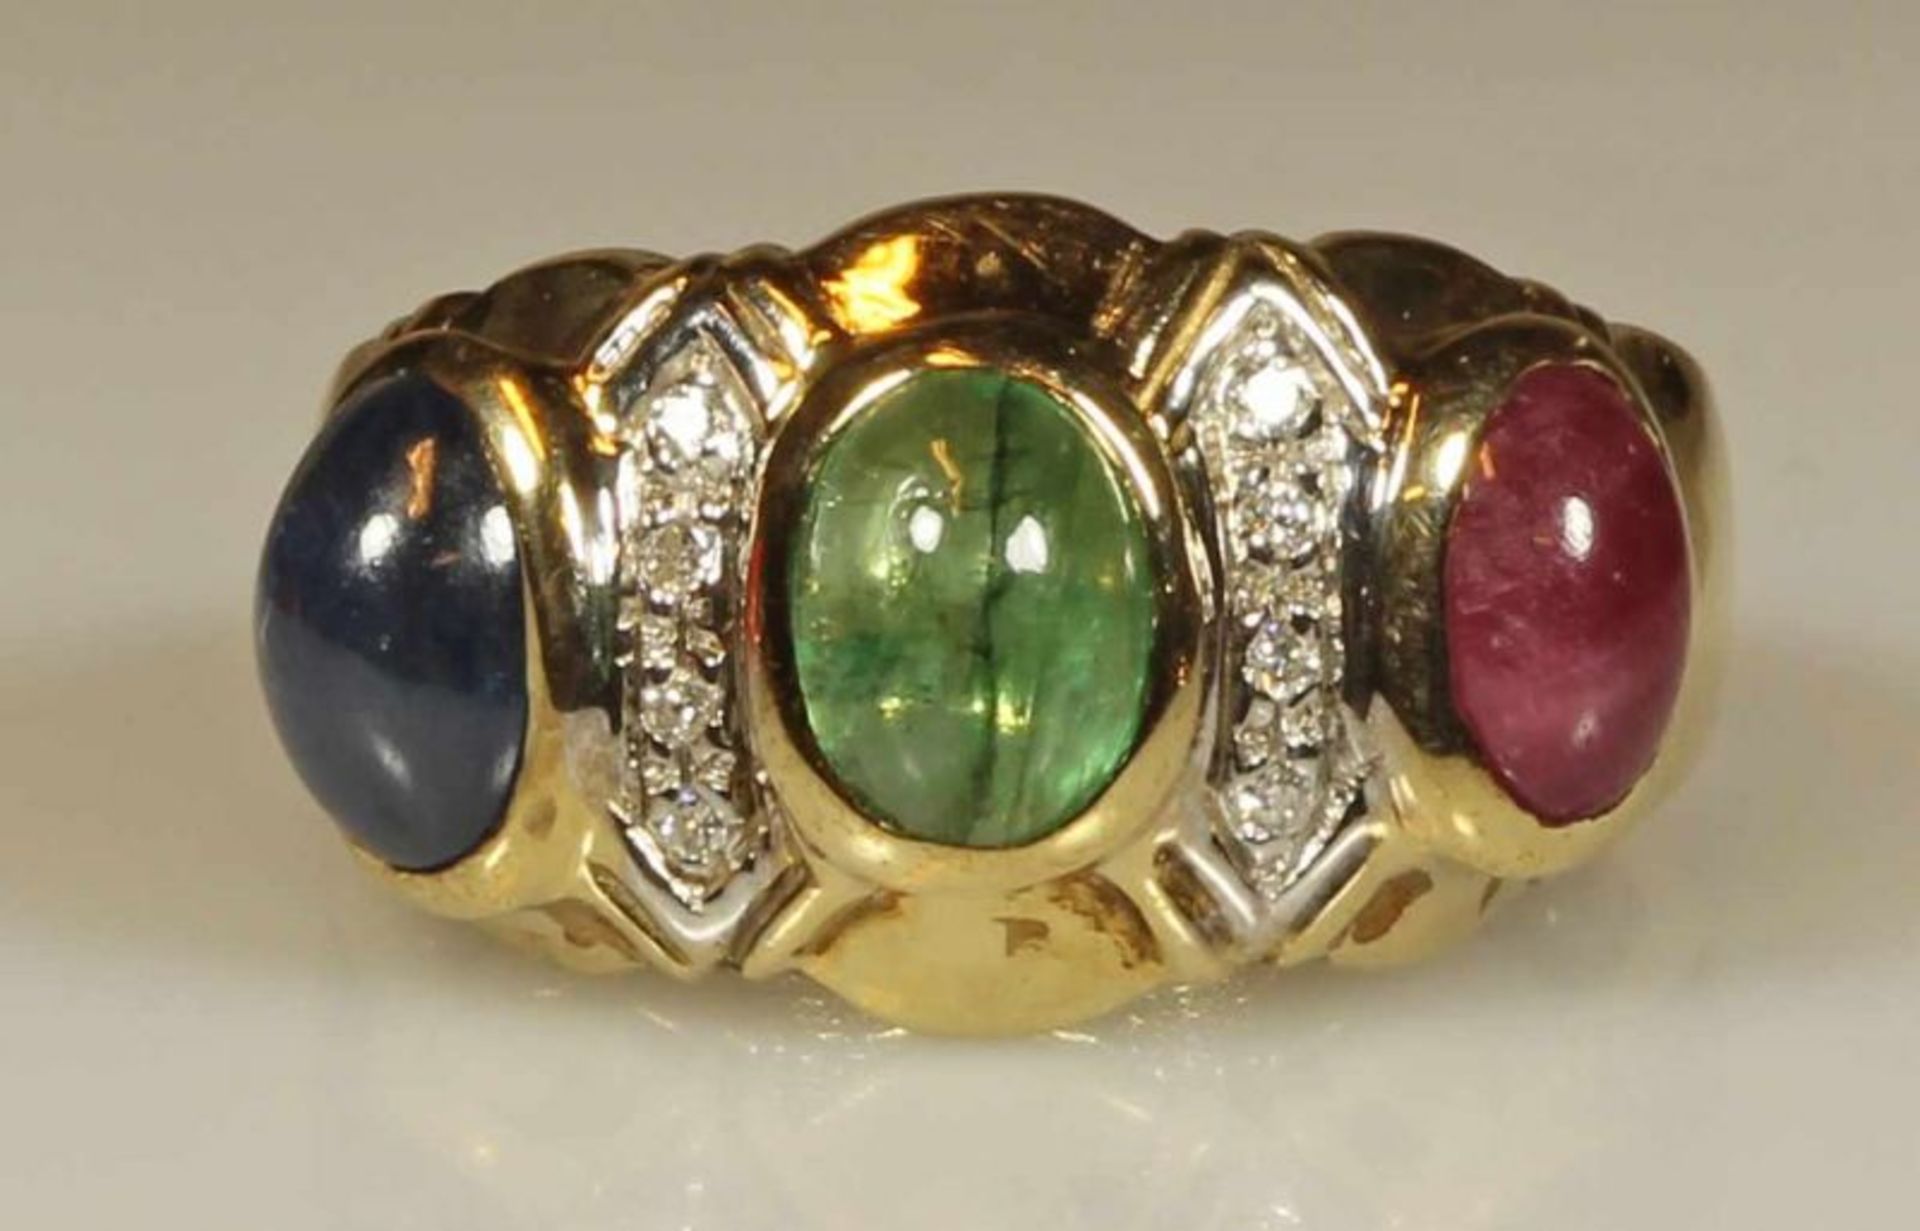 Ring, GG, punziert 375, je 1 ovaler Smaragd-, Saphir- und Rubincabochon, ca. 6.5 x 5 mm, 8